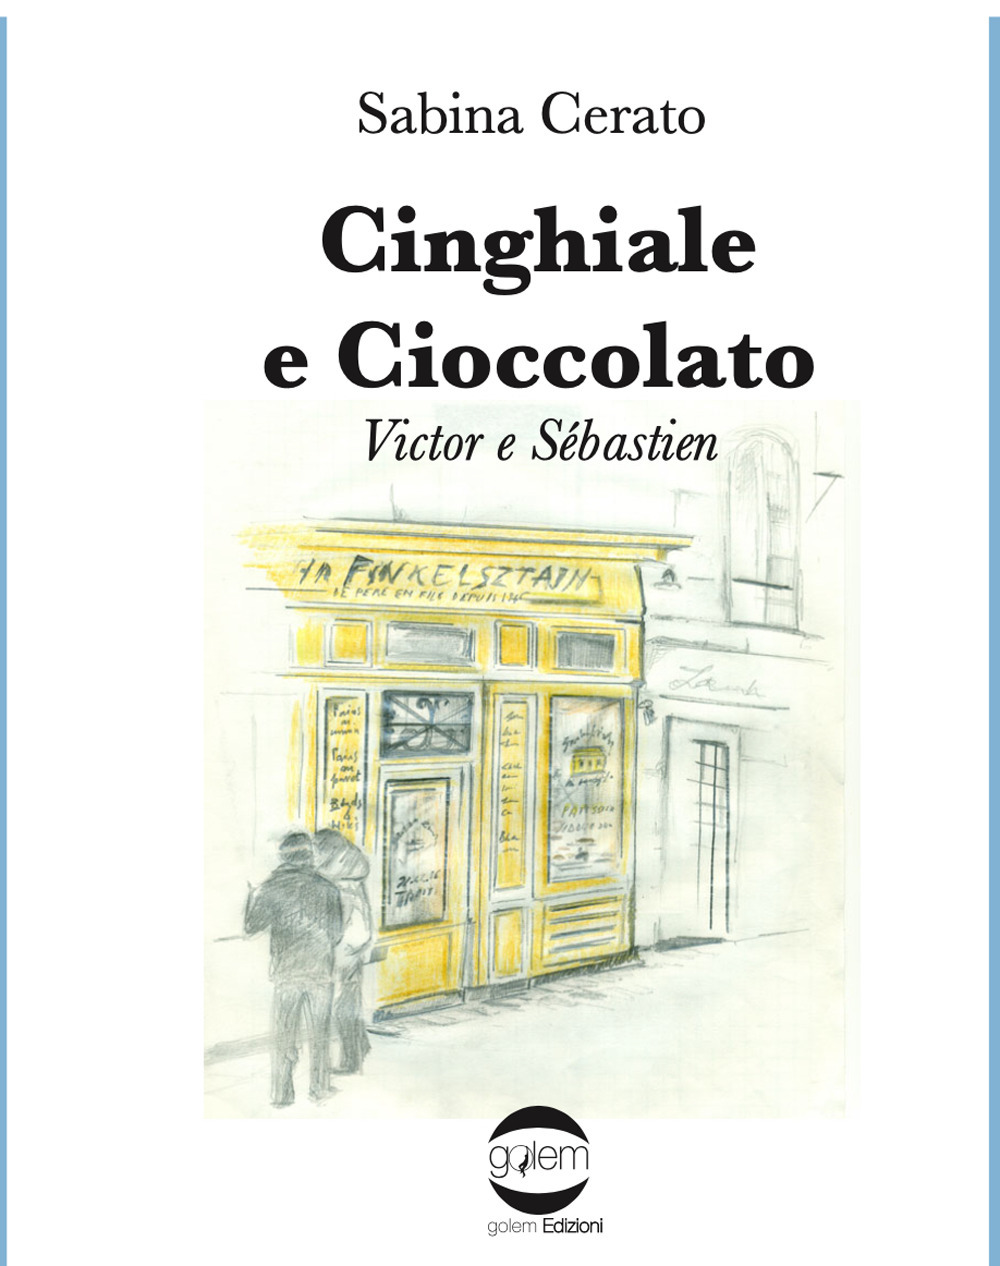 Libri Sabina Cerato - Cinghiale E Cioccolato. Victor E Sebastien NUOVO SIGILLATO, EDIZIONE DEL 09/12/2021 SUBITO DISPONIBILE